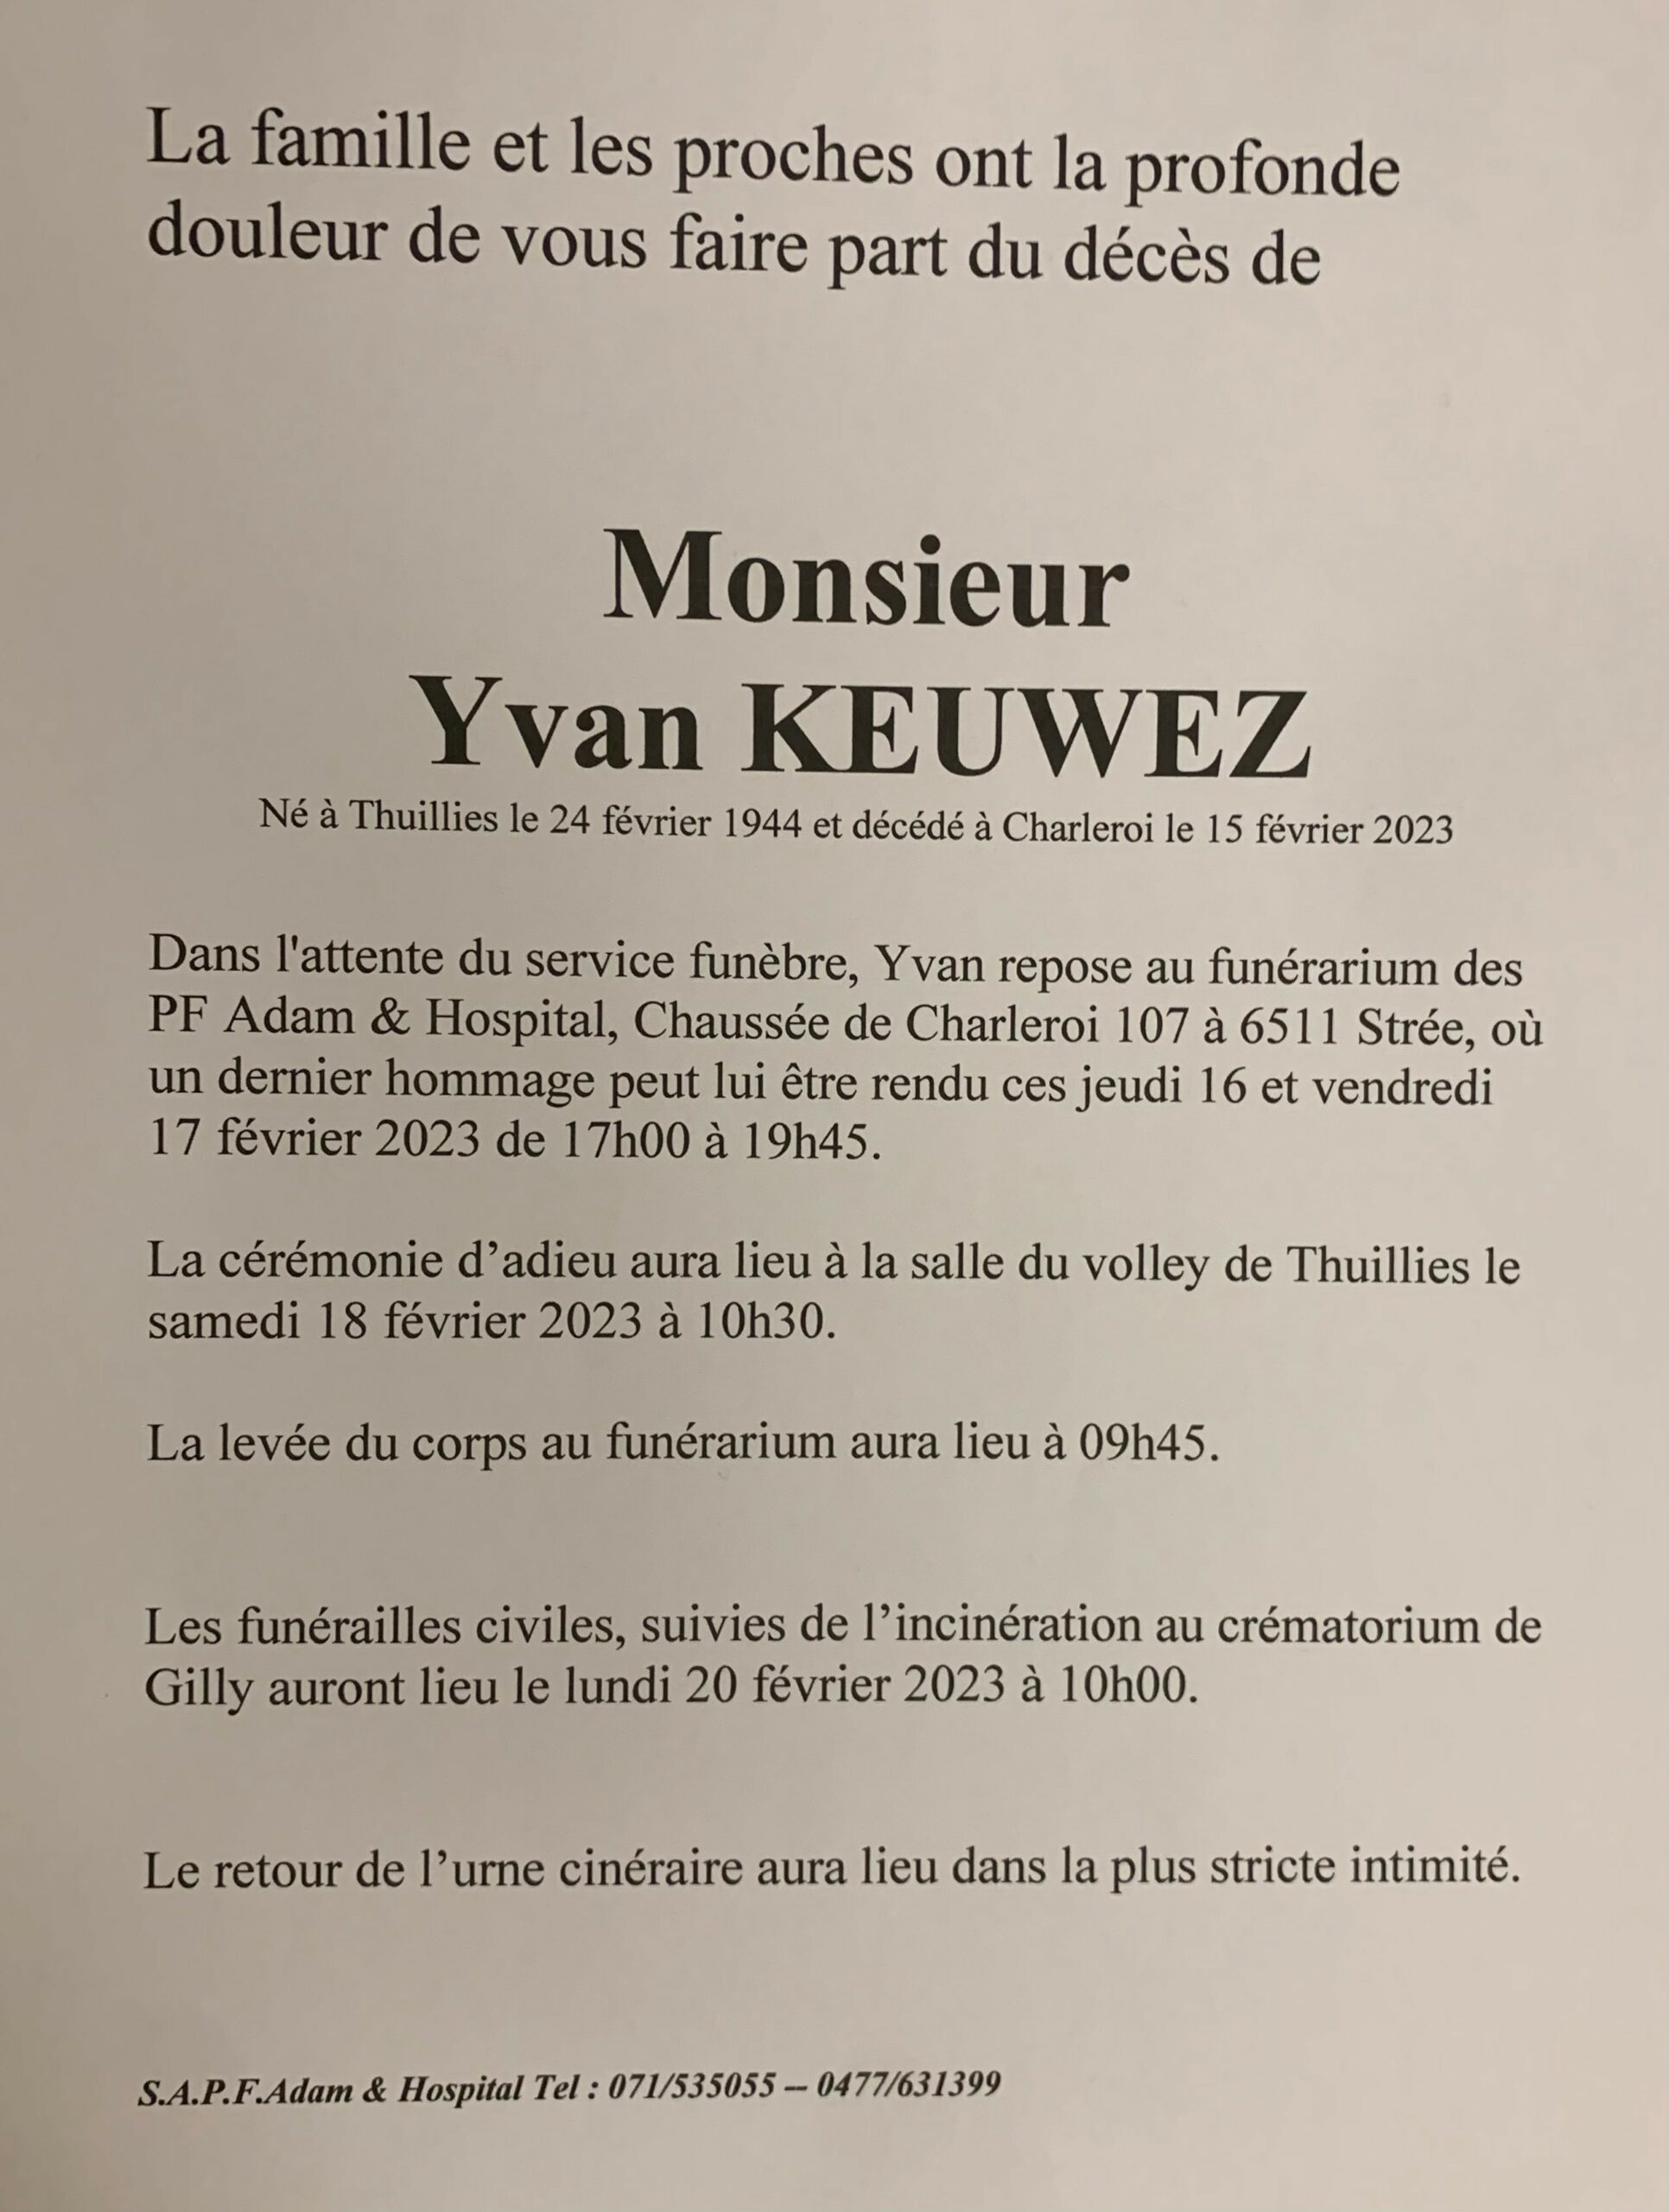 Monsieur Yvan KEUWEZ scaled | Funérailles Adam Hospital